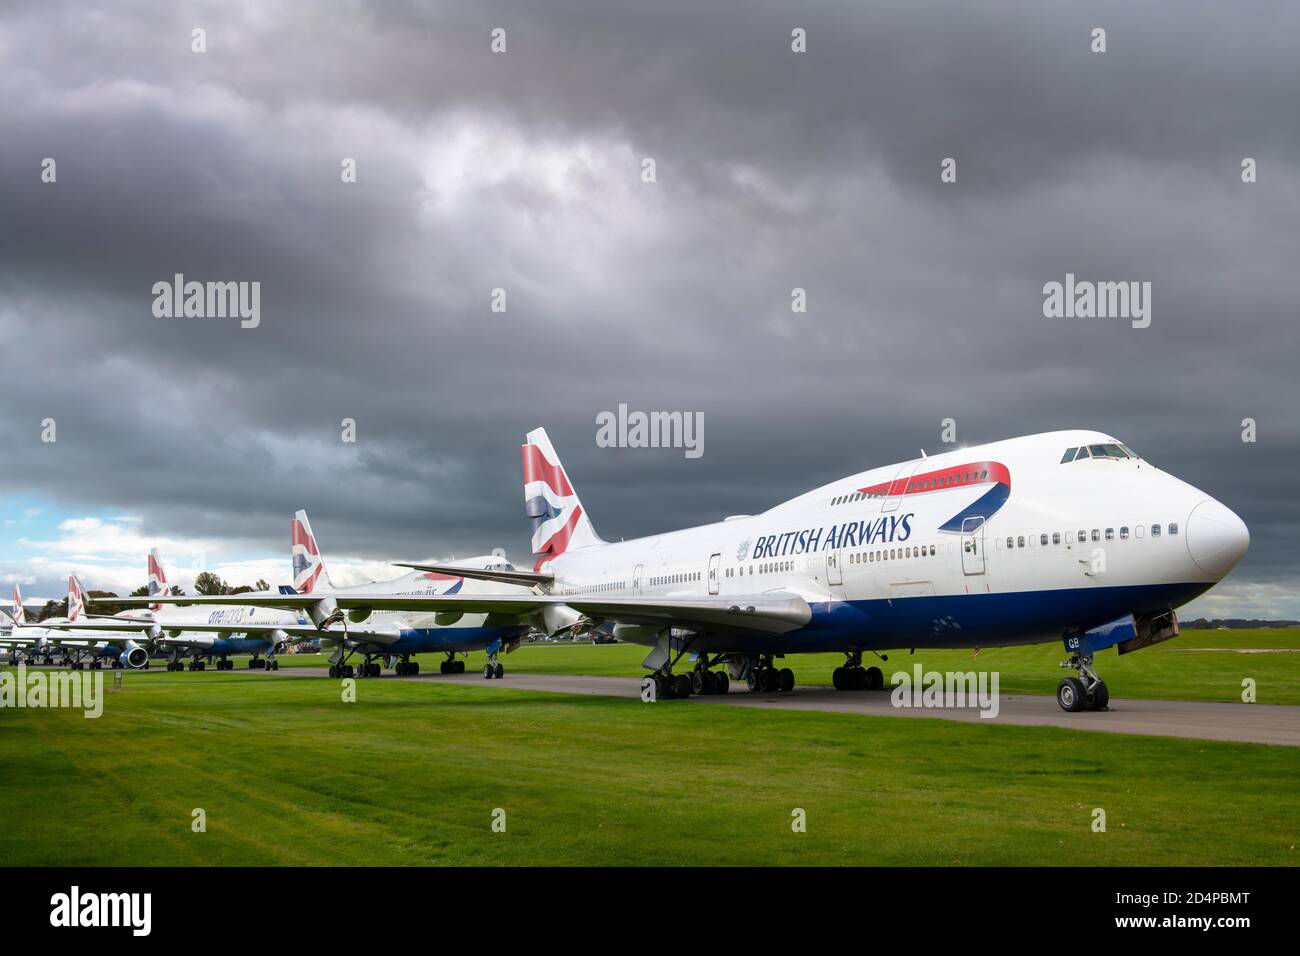 Samstag, 10. Oktober 2020. Sturmwolken sammeln sich über der letzten Ruhestätte der legendären British Airways Boeing 747 'Jumbo Jet'-Flotte, während sie auf dem Asphalt warten, um am Cotswold Airport in der Nähe von Kemble in Gloucestershire verschrottet zu werden. Quelle: Terry Mathews/Alamy Live News Stockfoto